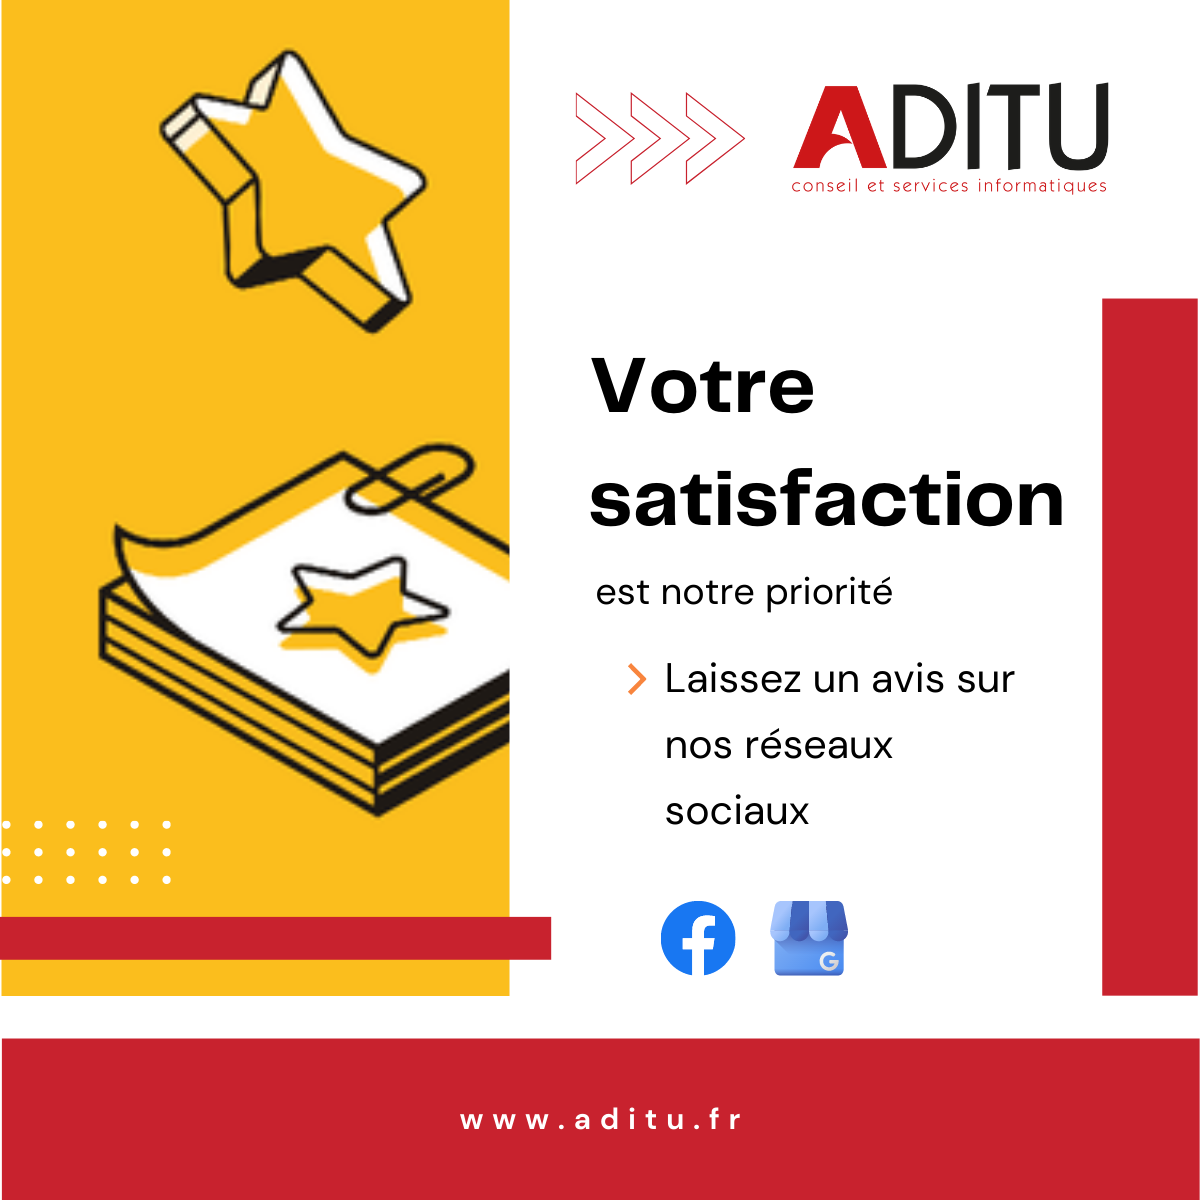 ADITU a à cœur d'être à l'écoute de ses clients et d'améliorer les services proposés.